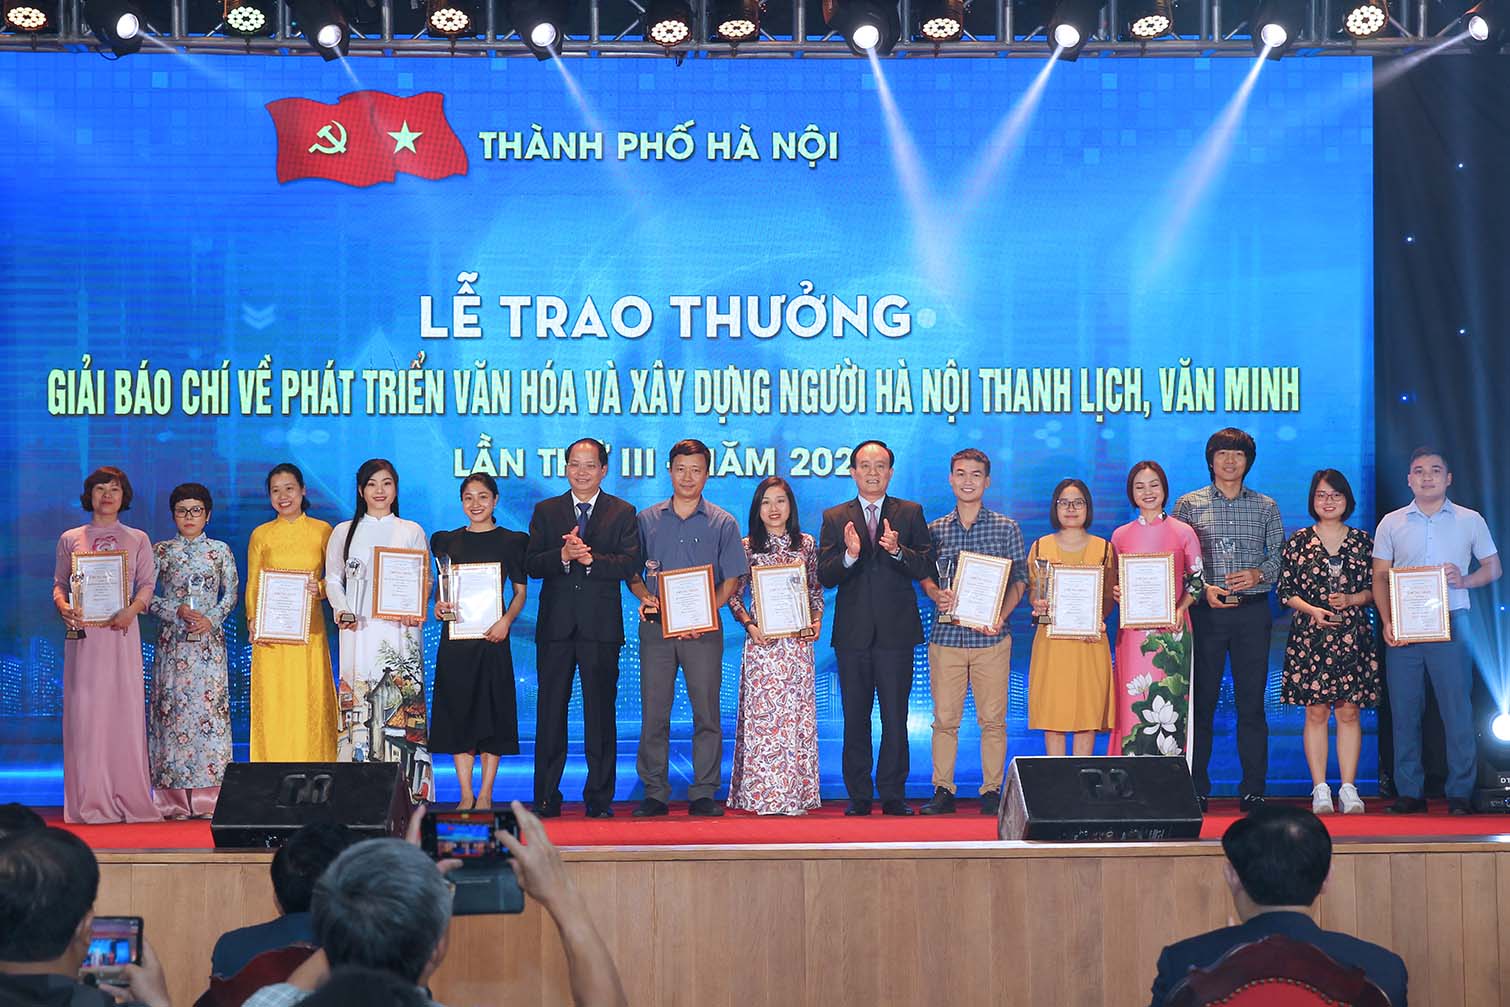 Các tác giả đoạt Giải C Giải Báo chí về Phát triển văn hóa và xây dựng người Hà Nội thanh lịch, văn minh